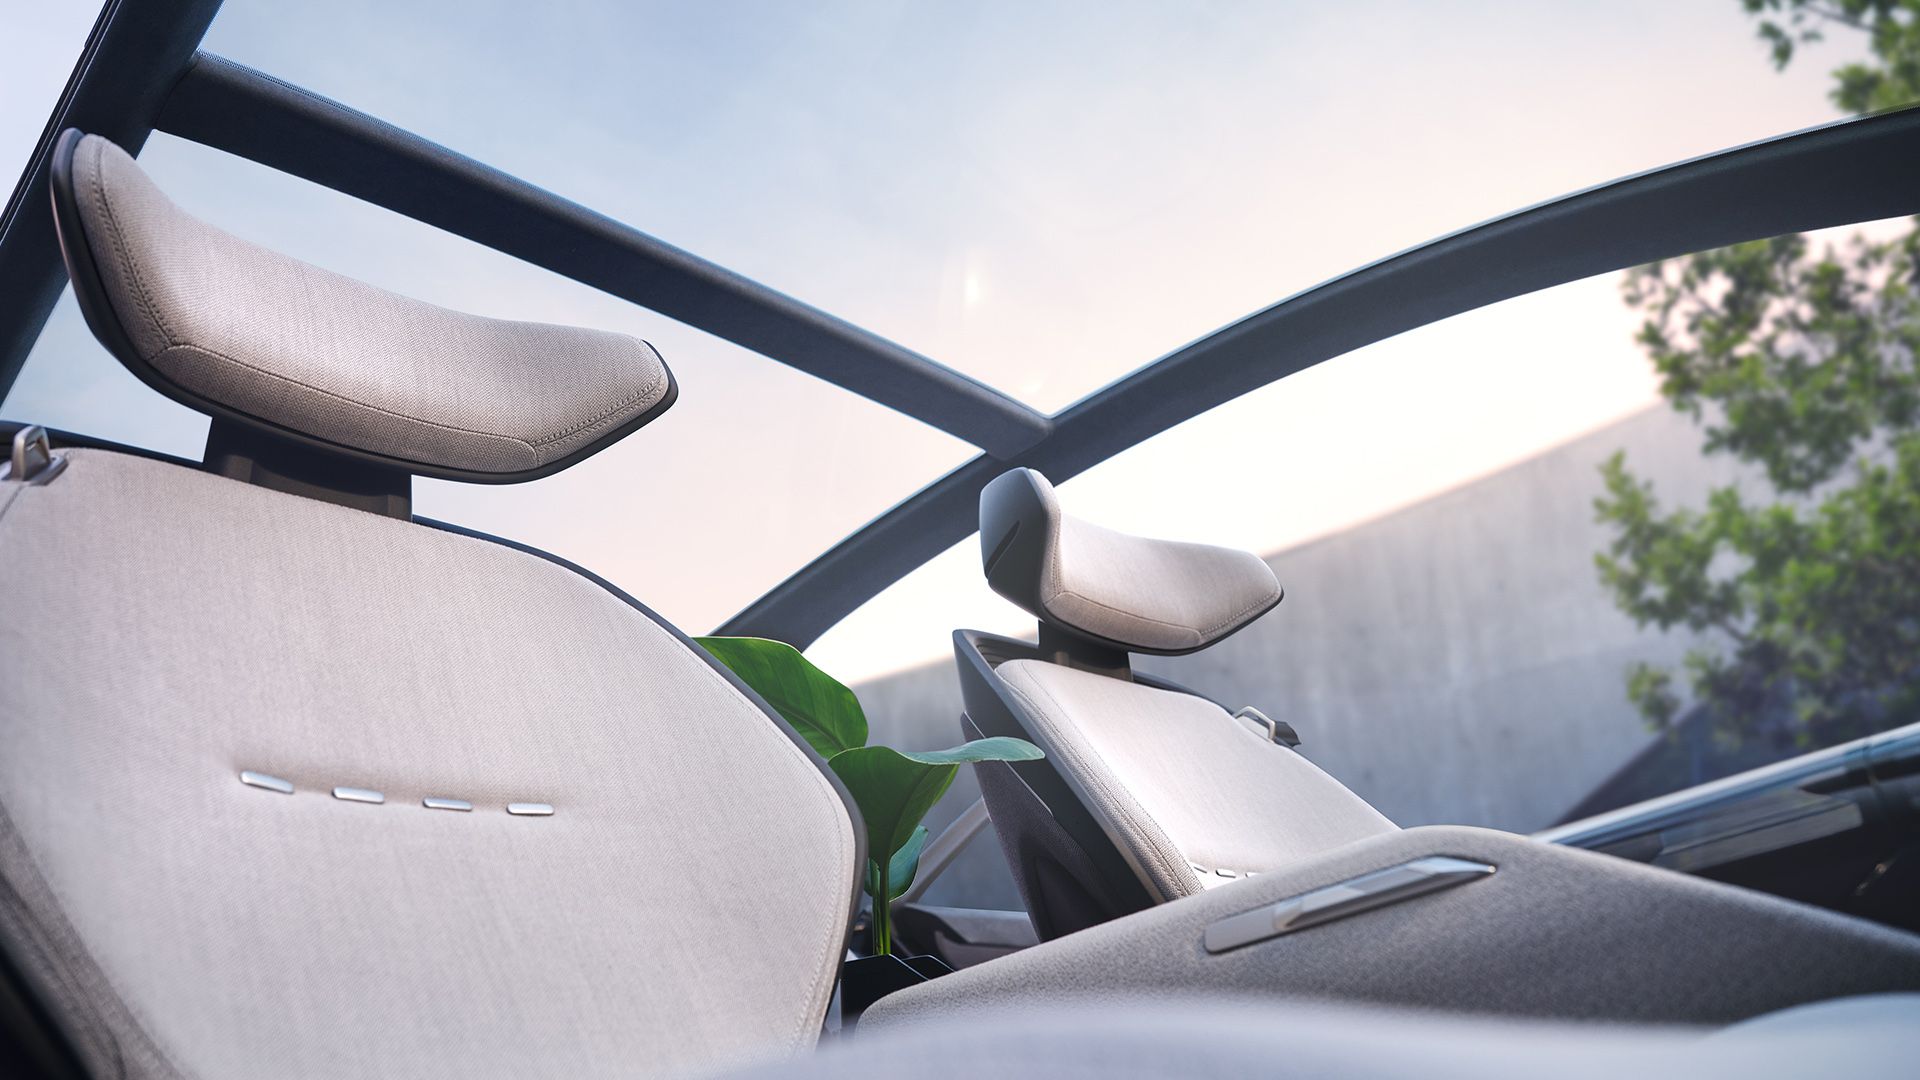 Innenansicht des Audi grandsphere concept mit Blick durch das Panoramadach.